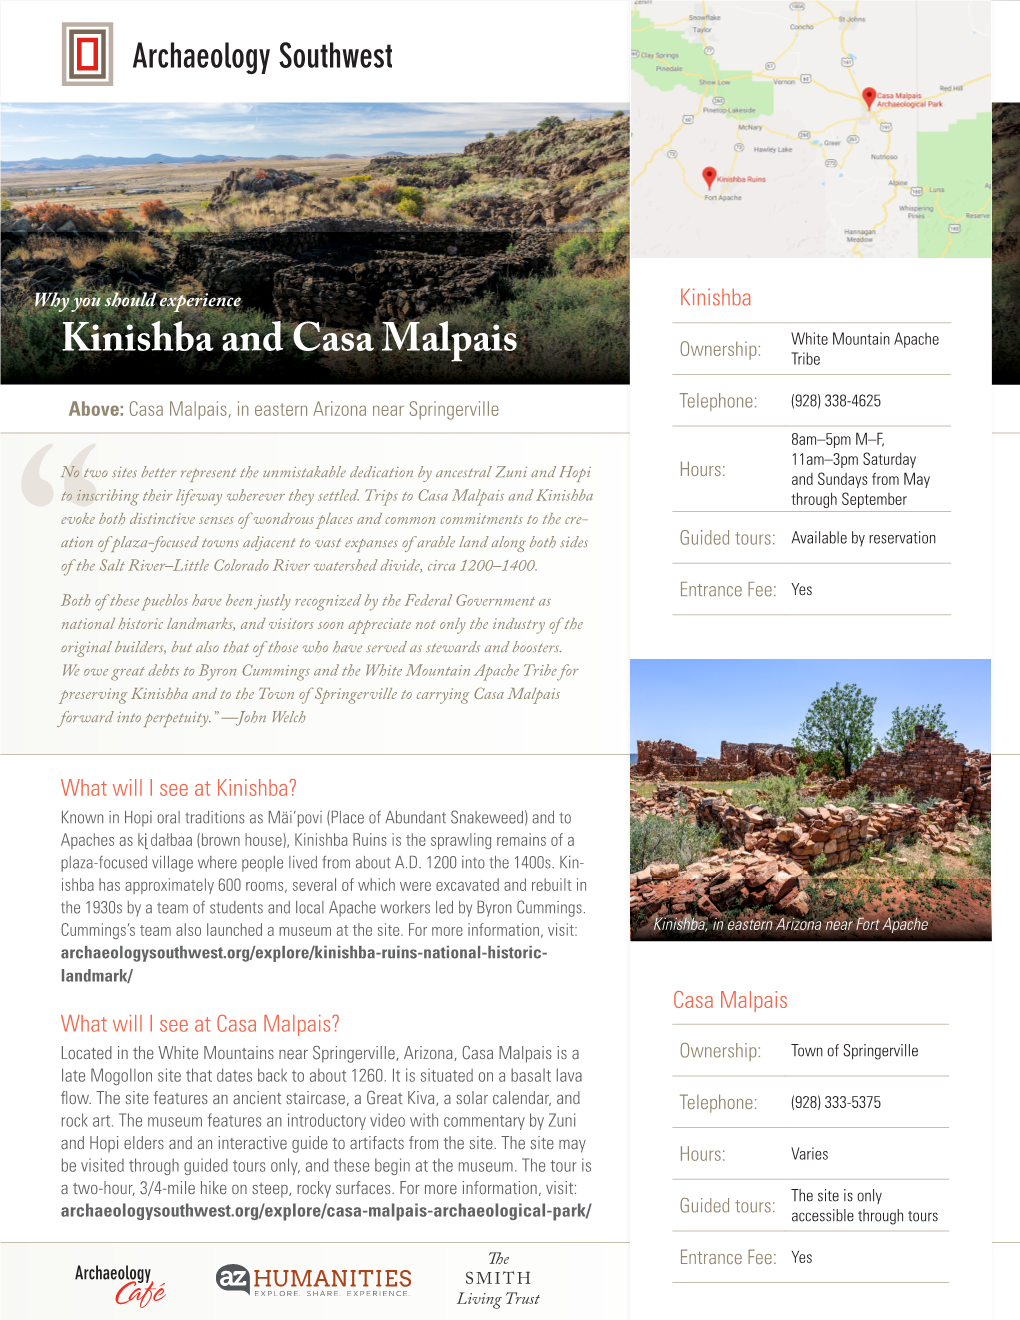 Kinishba and Casa Malpais Tribe